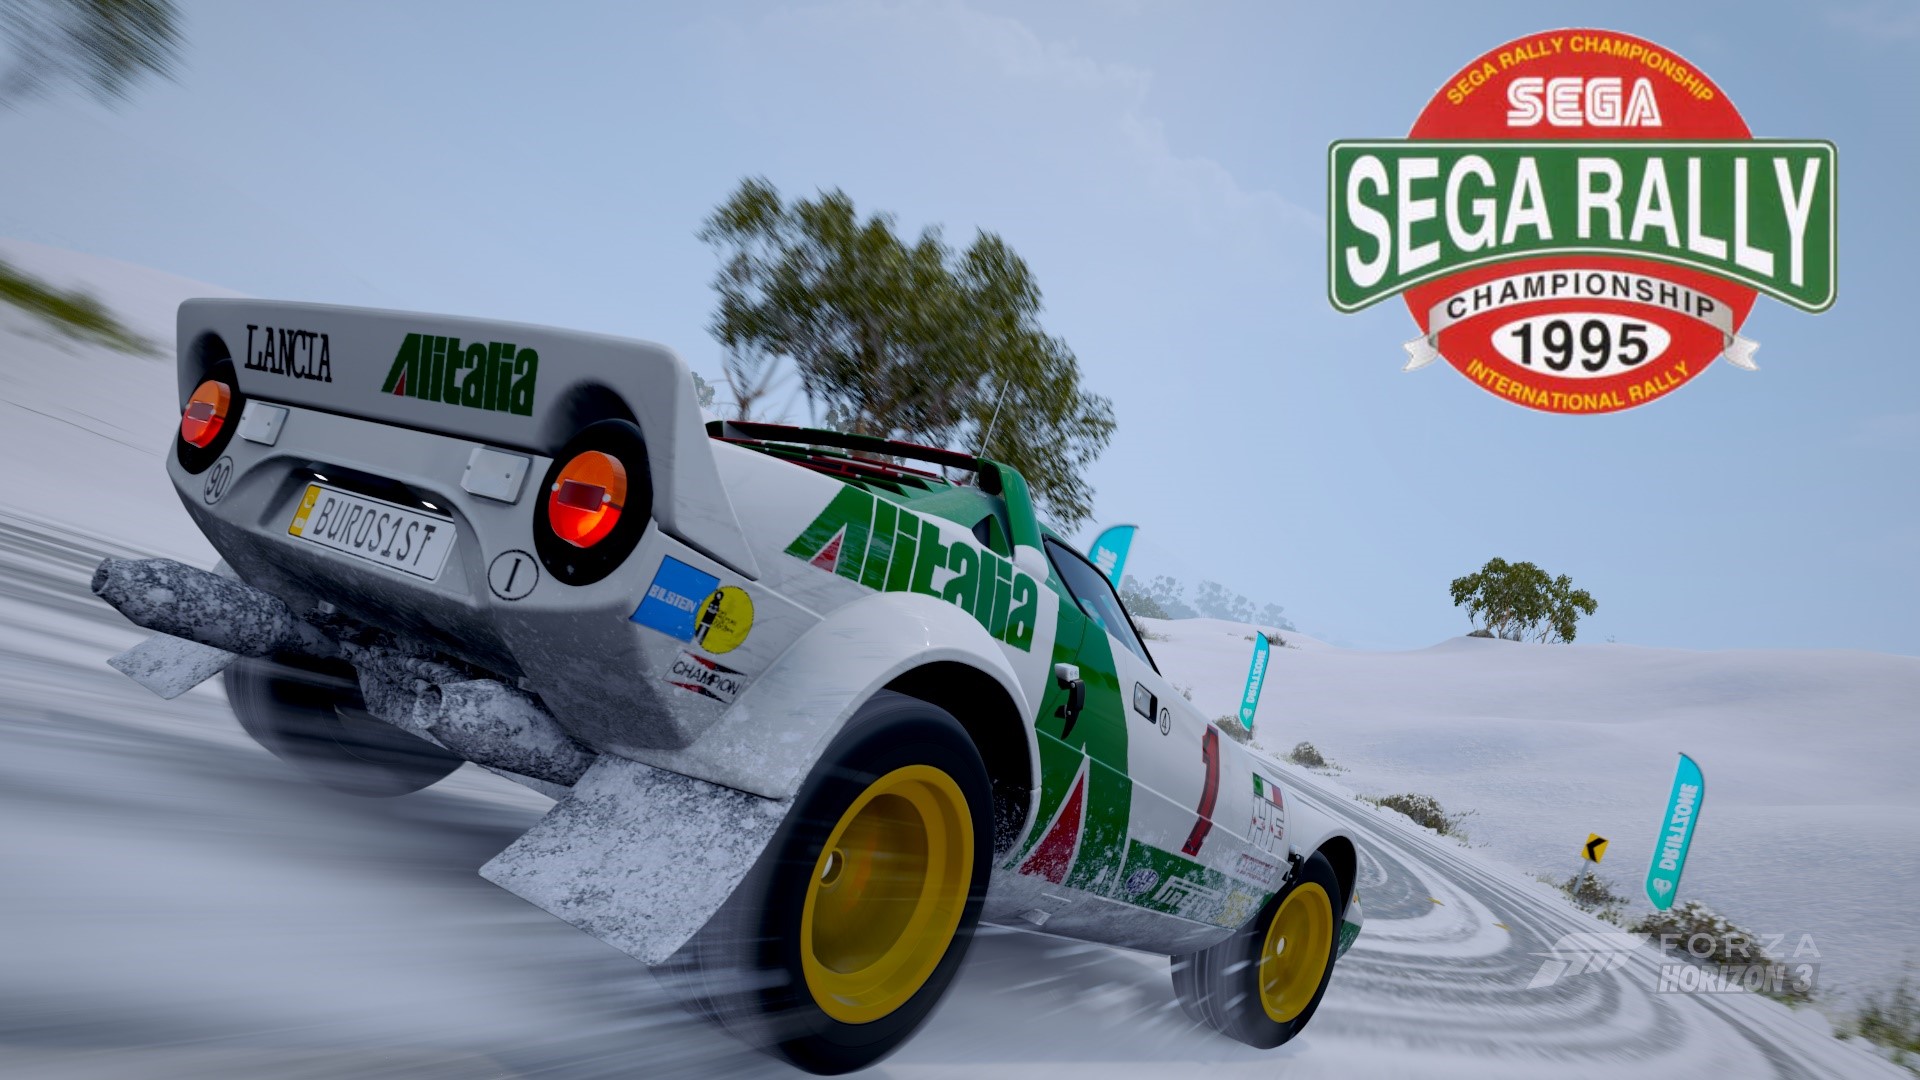 Forza Horizon 3 Sur Un Air De Sega Rally Championship